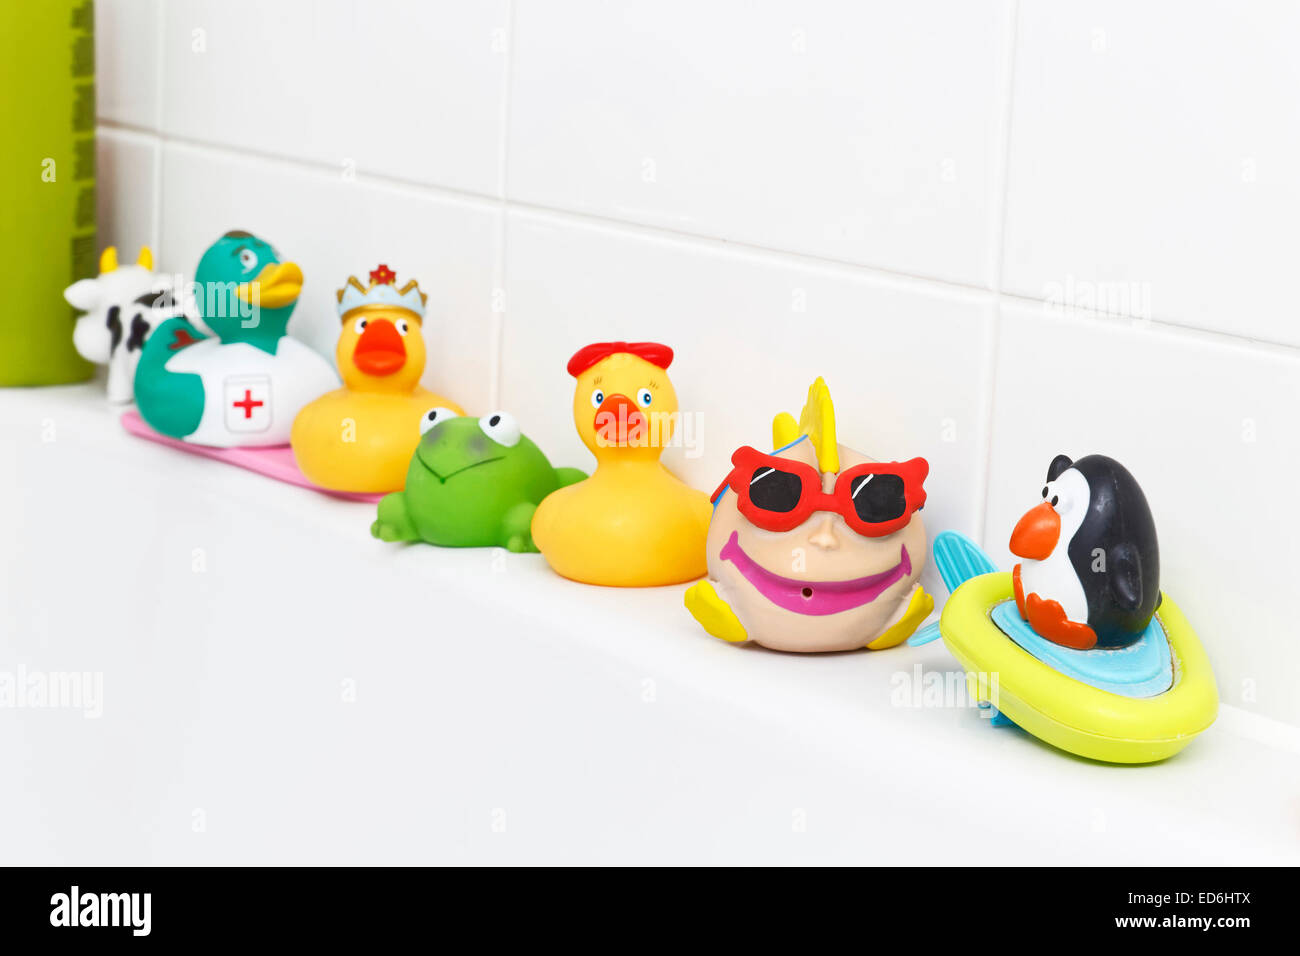 Patitos de goma y otros juguetes por el lado de la bañera Foto de stock